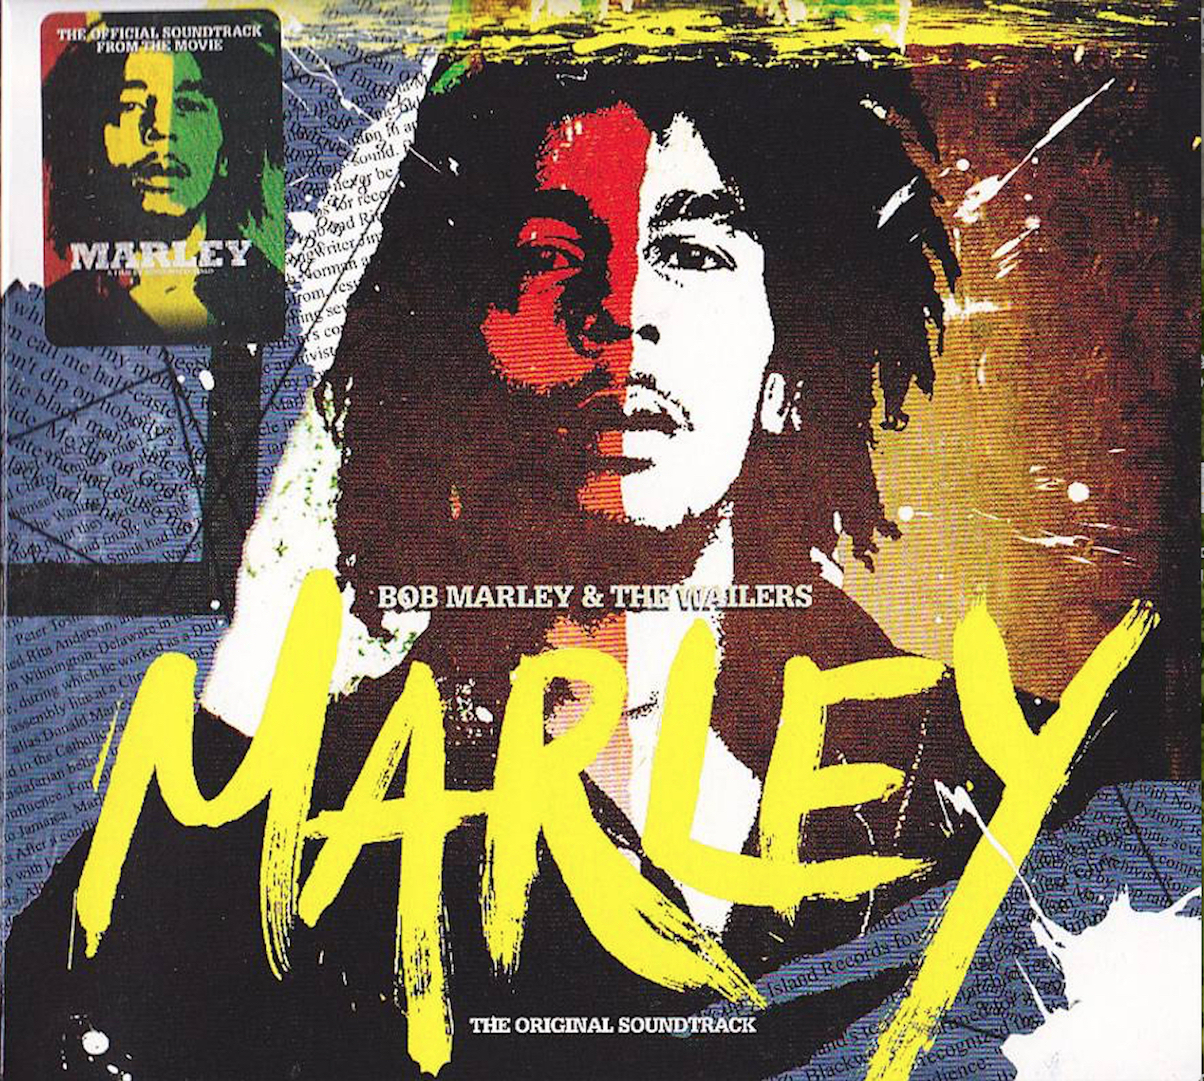 Bob Marley CD. Боб Марли альбомы. Bob Marley Greatest Hits. "Bob Marley & the Wailers " "Africa Unite".